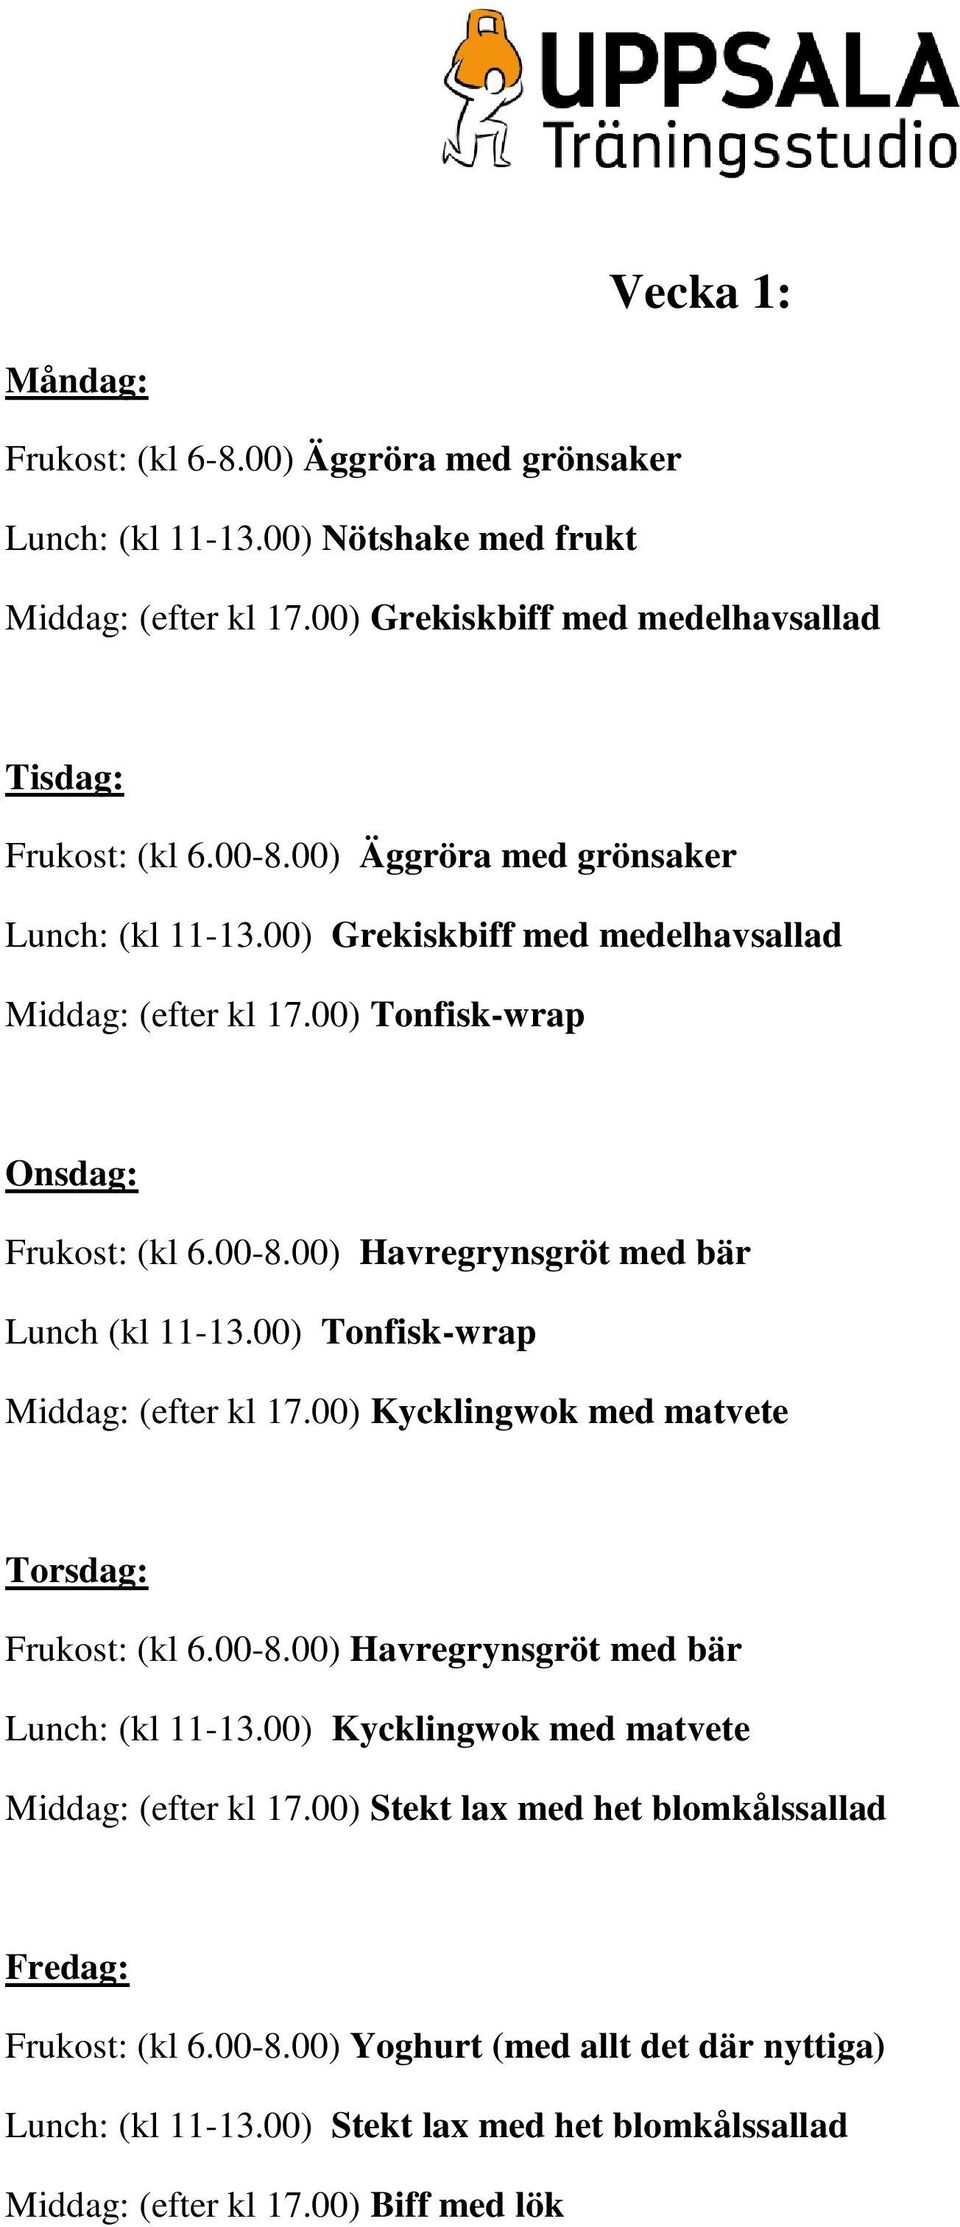 00) Tonfisk-wrap Middag: (efter kl 17.00) Kycklingwok med matvete Torsdag: Frukost: (kl 6.00-8.00) Havregrynsgröt med bär Lunch: (kl 11-13.00) Kycklingwok med matvete Middag: (efter kl 17.